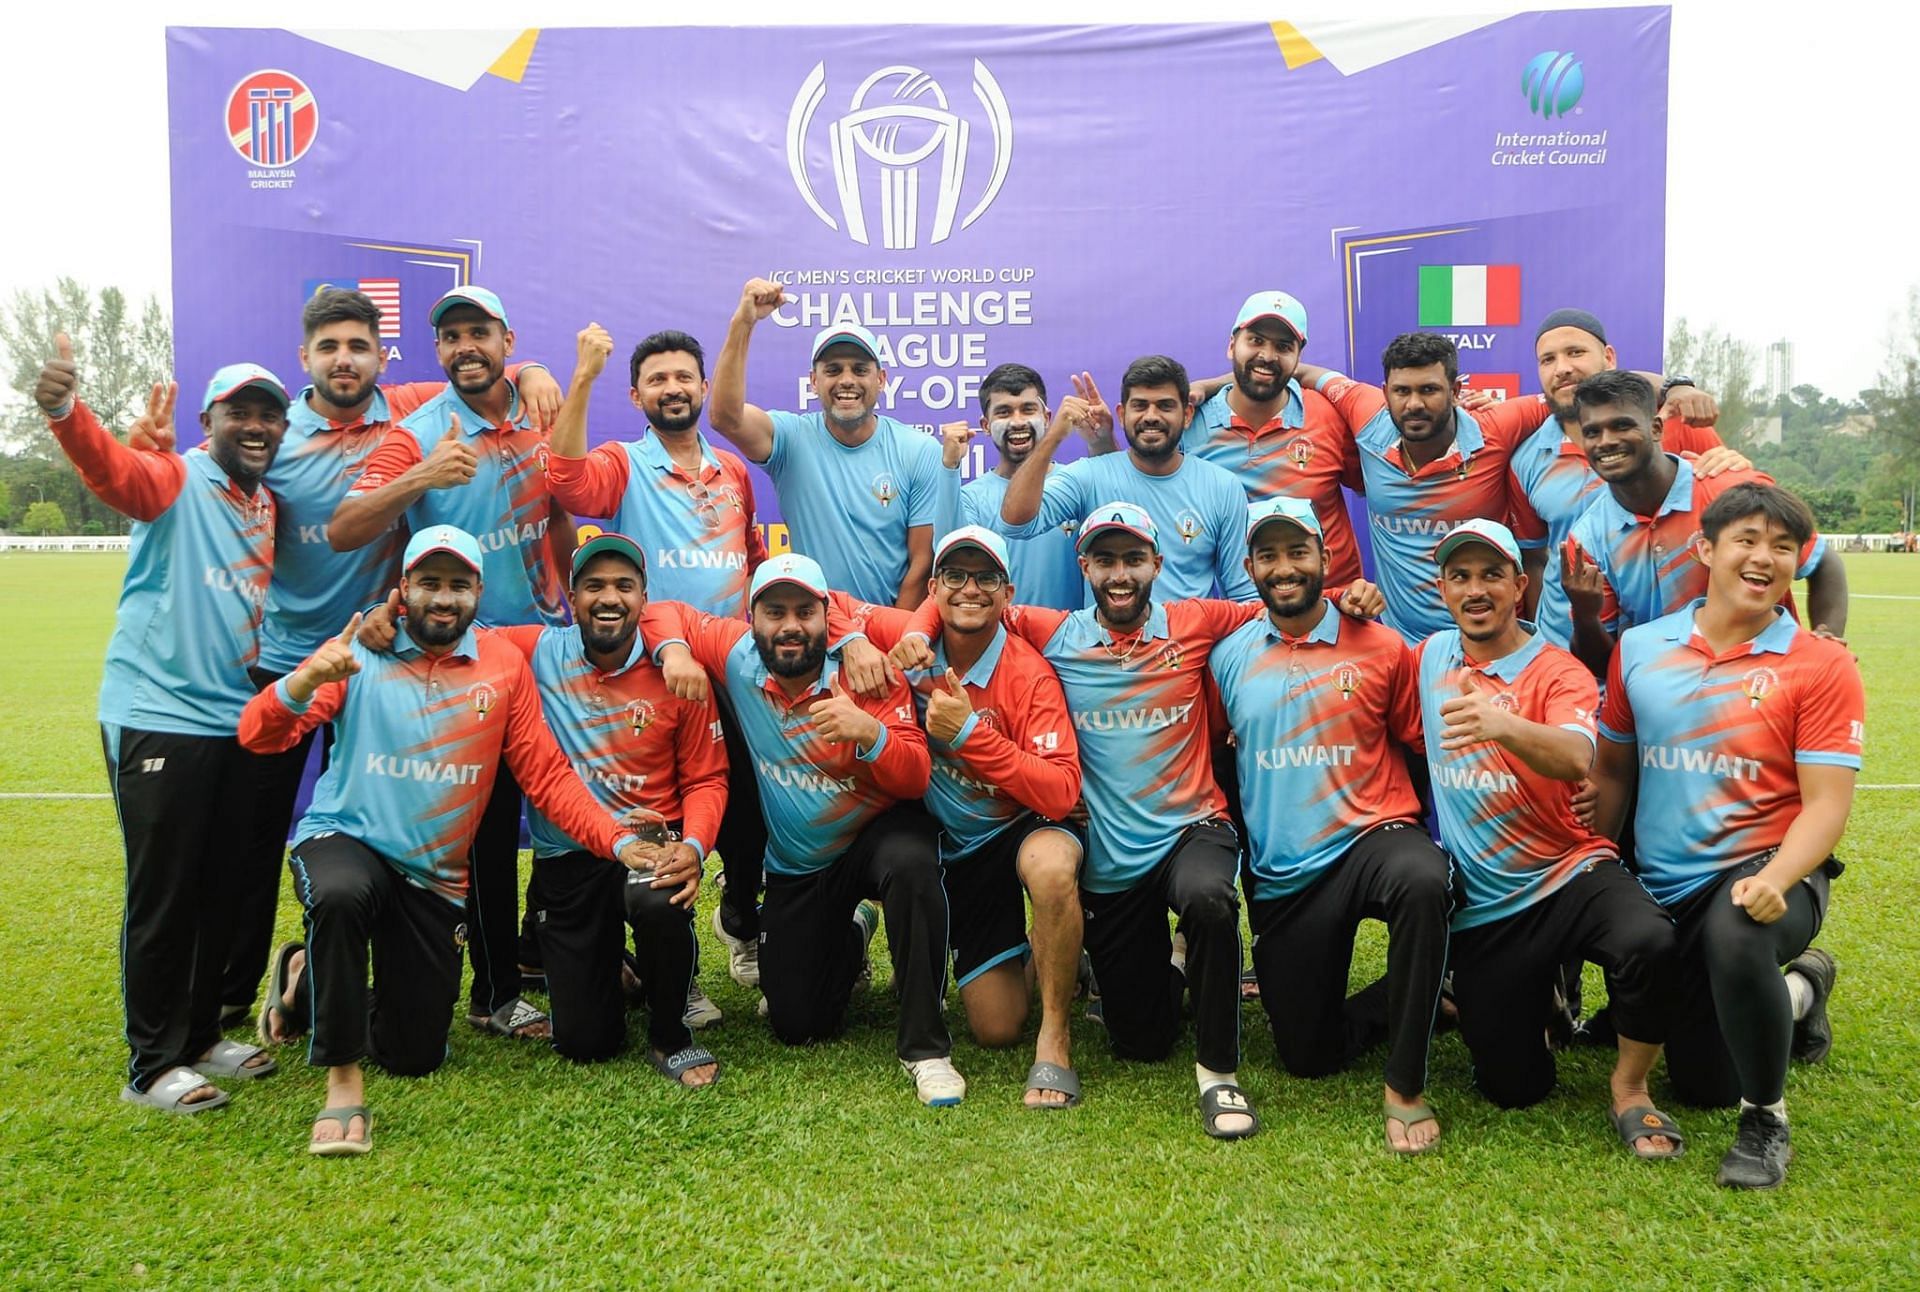        Photo - Kuwait Cricket Team